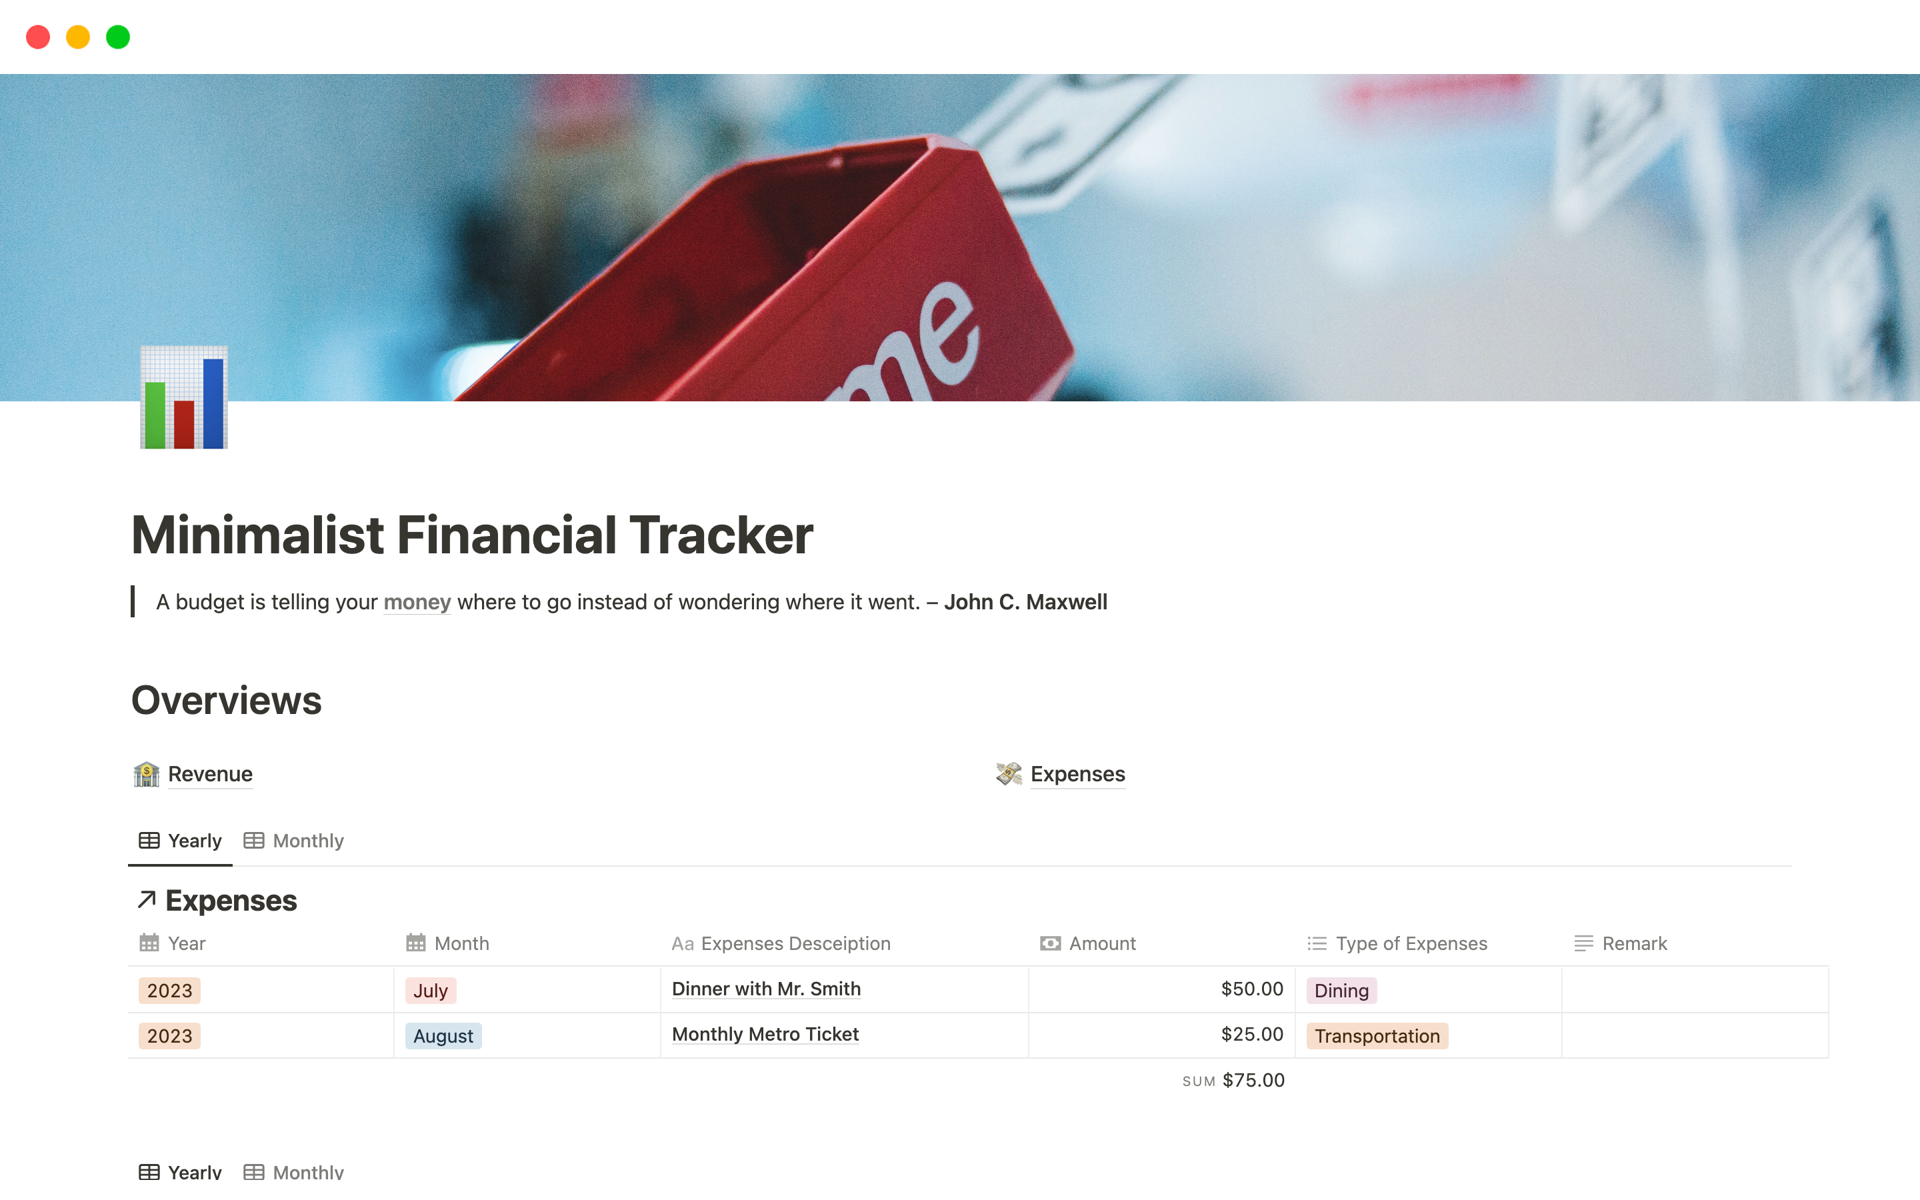 Vista previa de una plantilla para Minimalist Financial Tracker